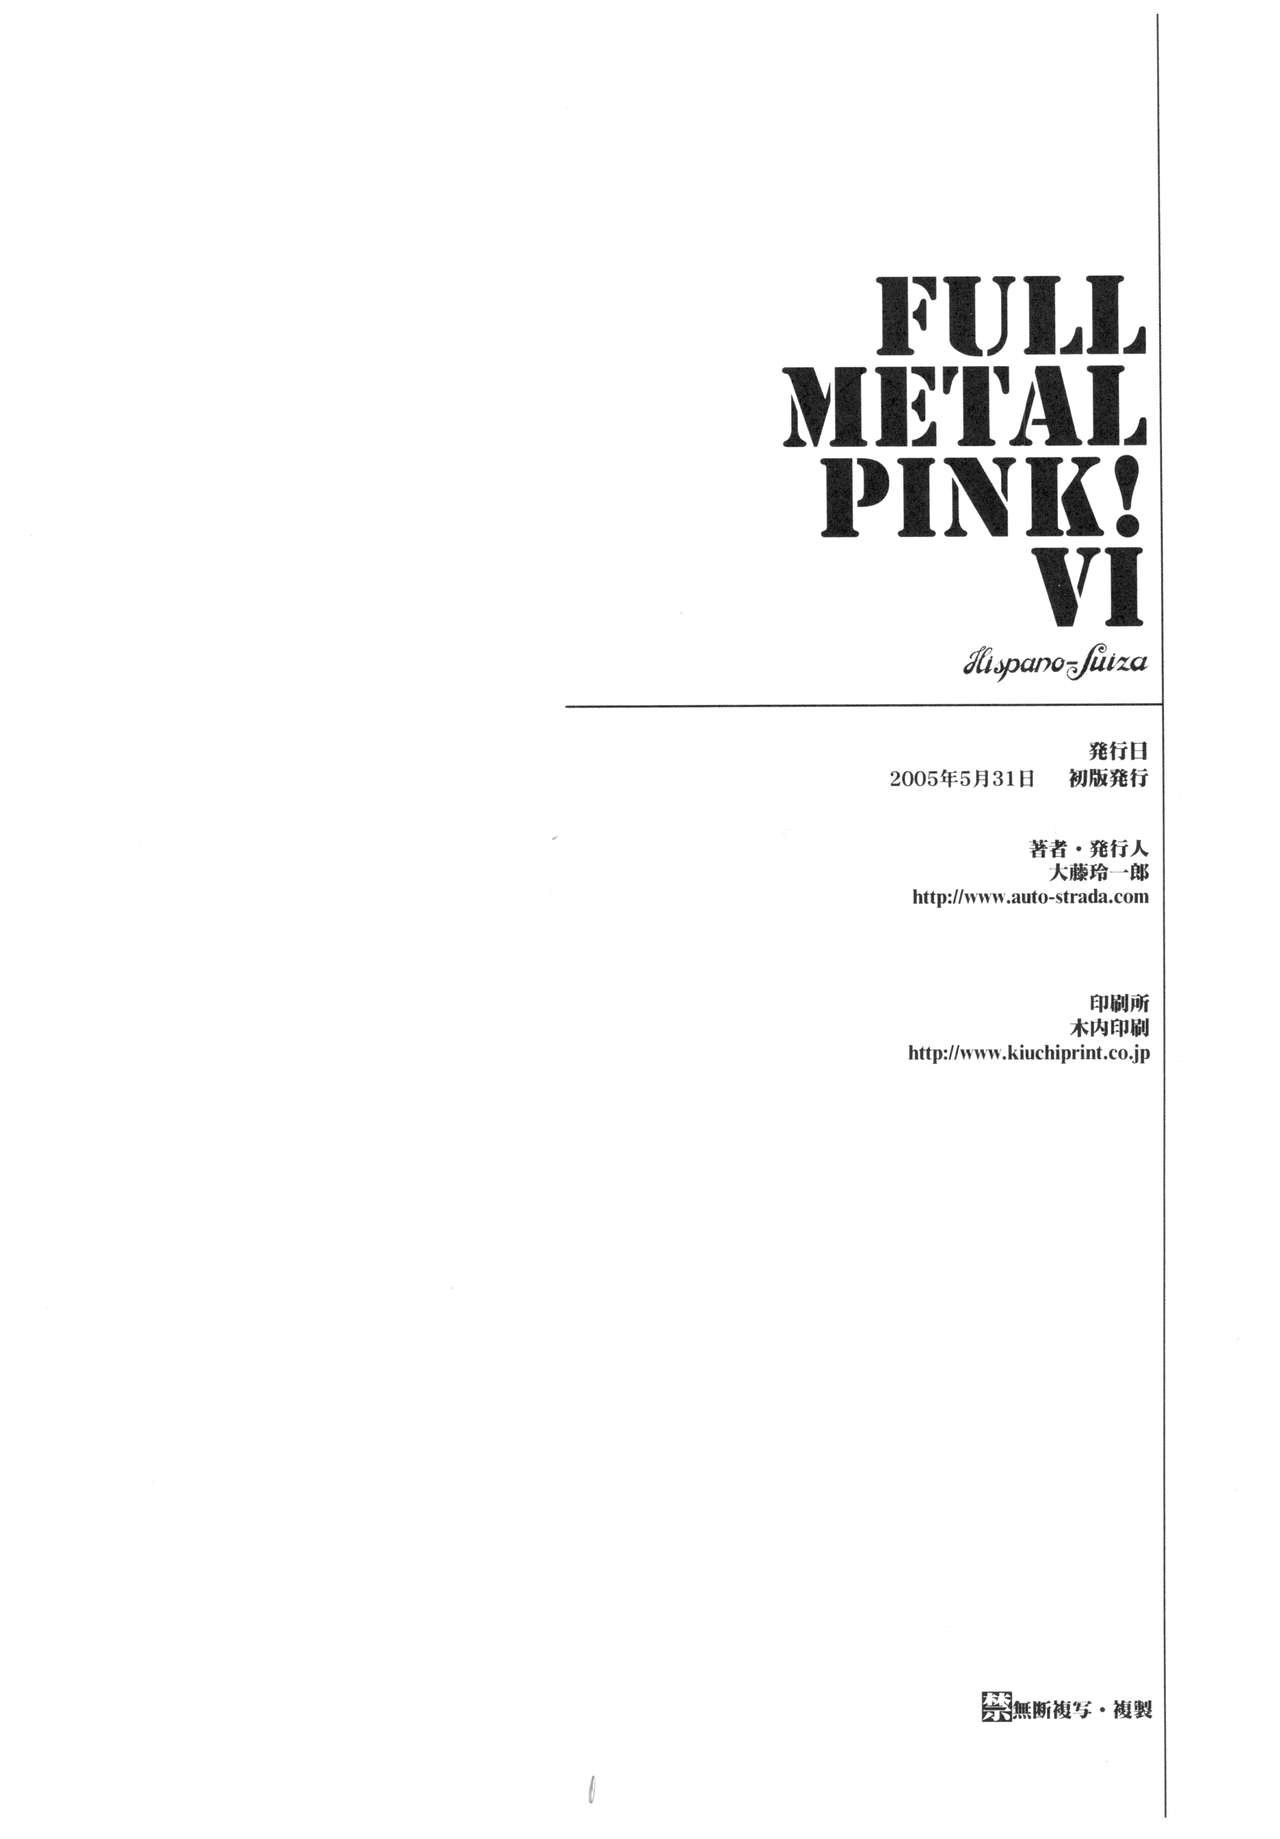 [Hispano-Suiza (大藤玲一郎)] FULL METAL PINK! VI (フルメタル・パニック!)